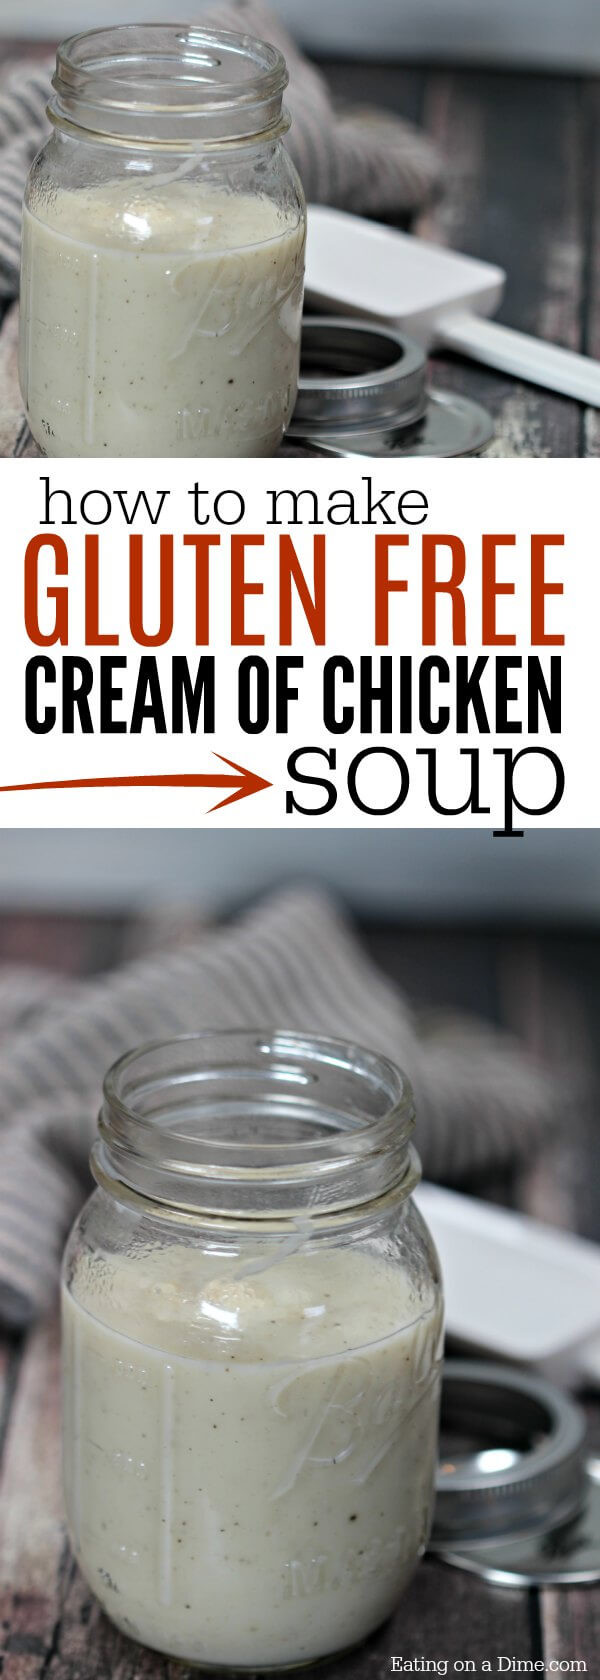 Non Dairy Cream Of Chicken Soup
 Gluten Free Cream of Chicken Soup Recipe Gluten Free